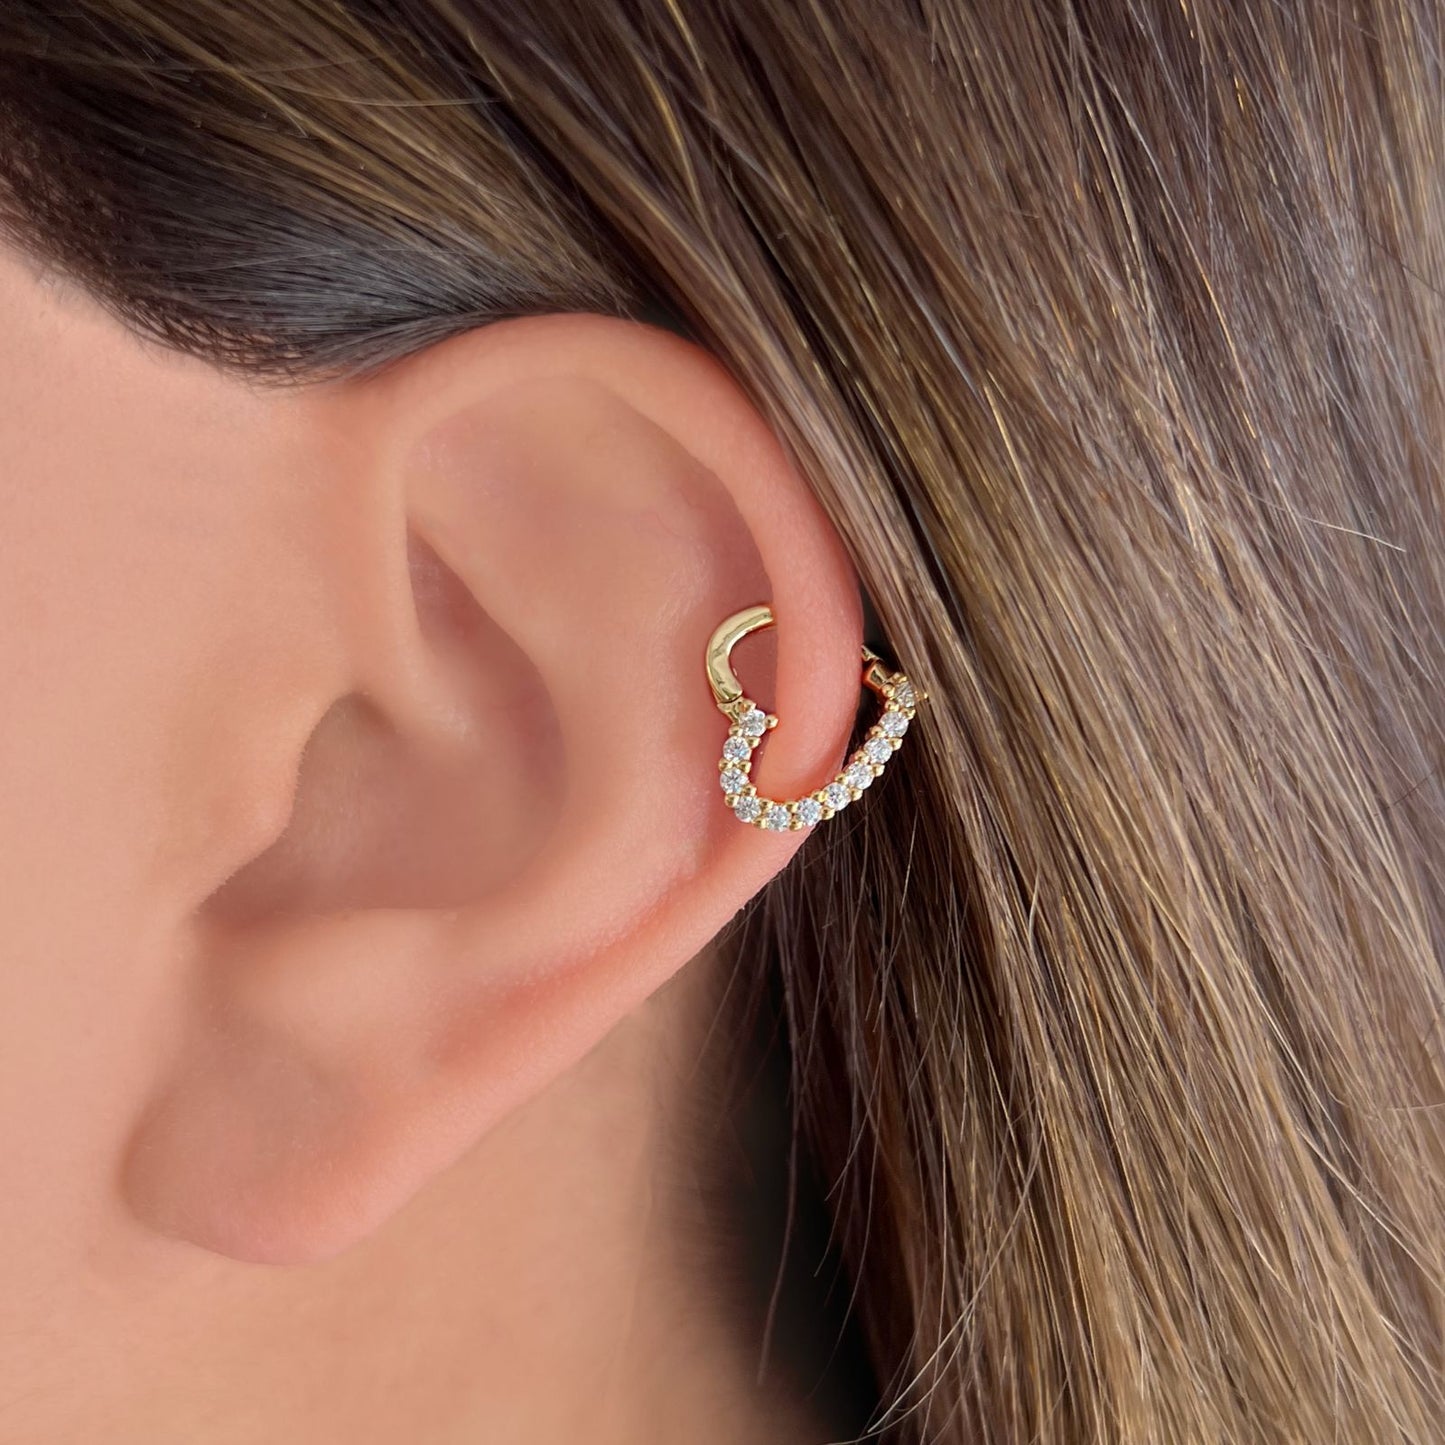 Heart-shaped earrings (024)